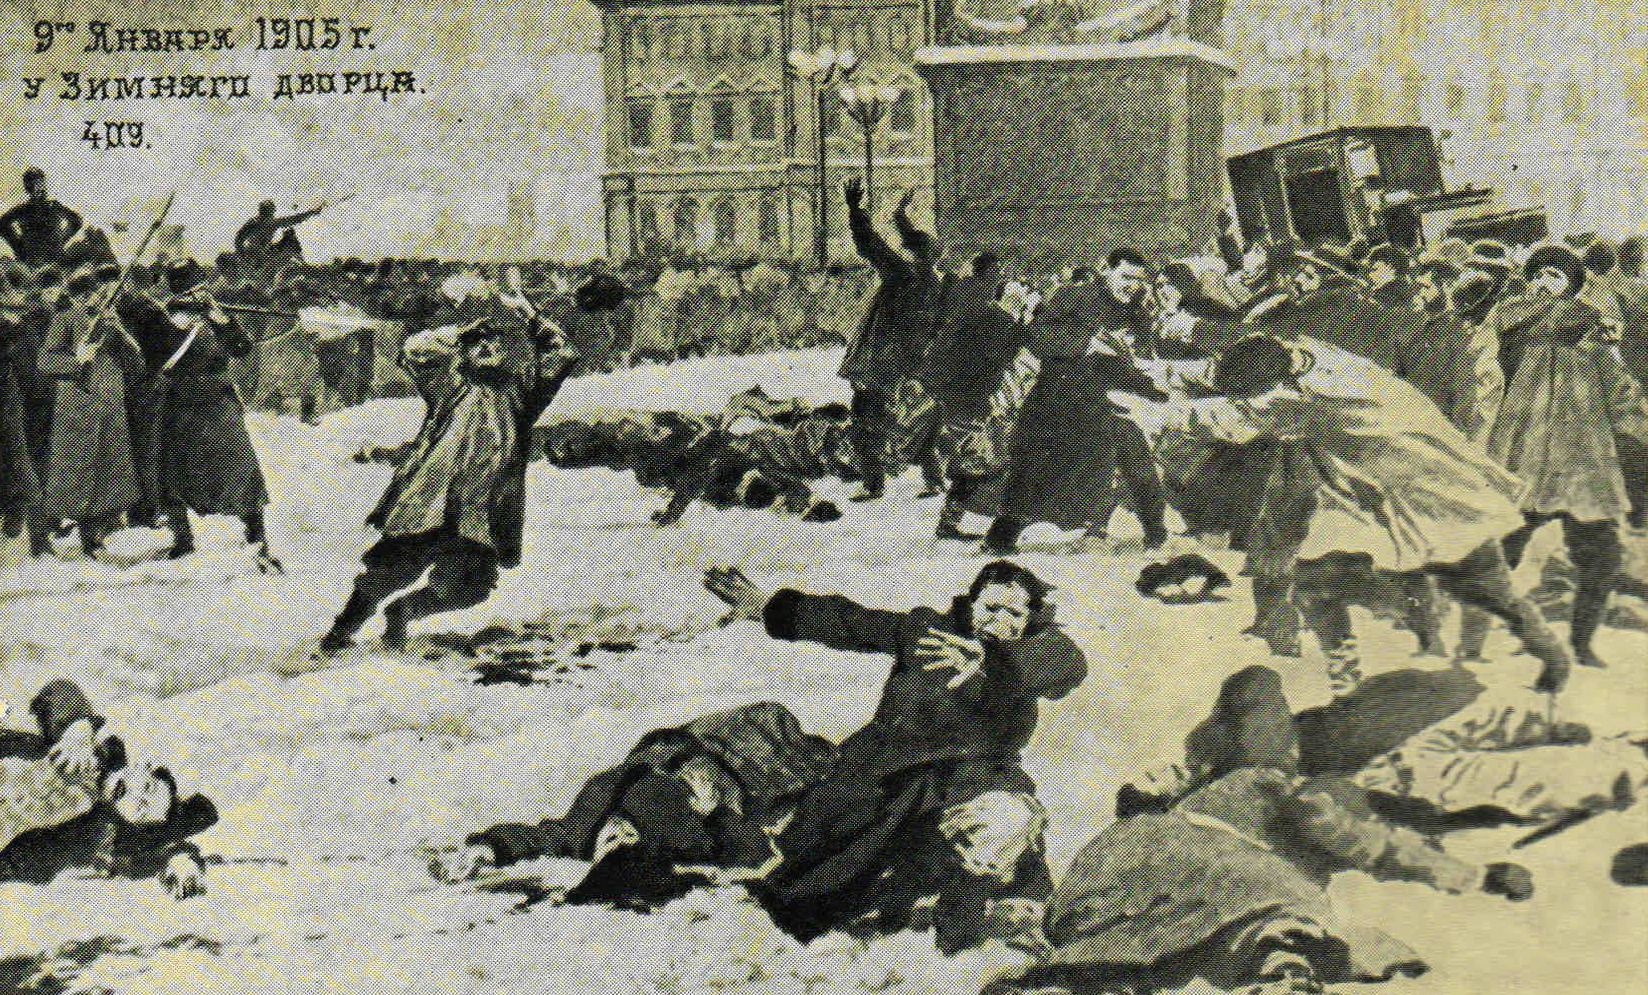 9 января 19 год. Расстрел мирной демонстрации 1905 в Петербурге. Кровавое восстание 1905. 9 Января 1905 кровавое воскресенье. Кровавое воскресенье 1905.